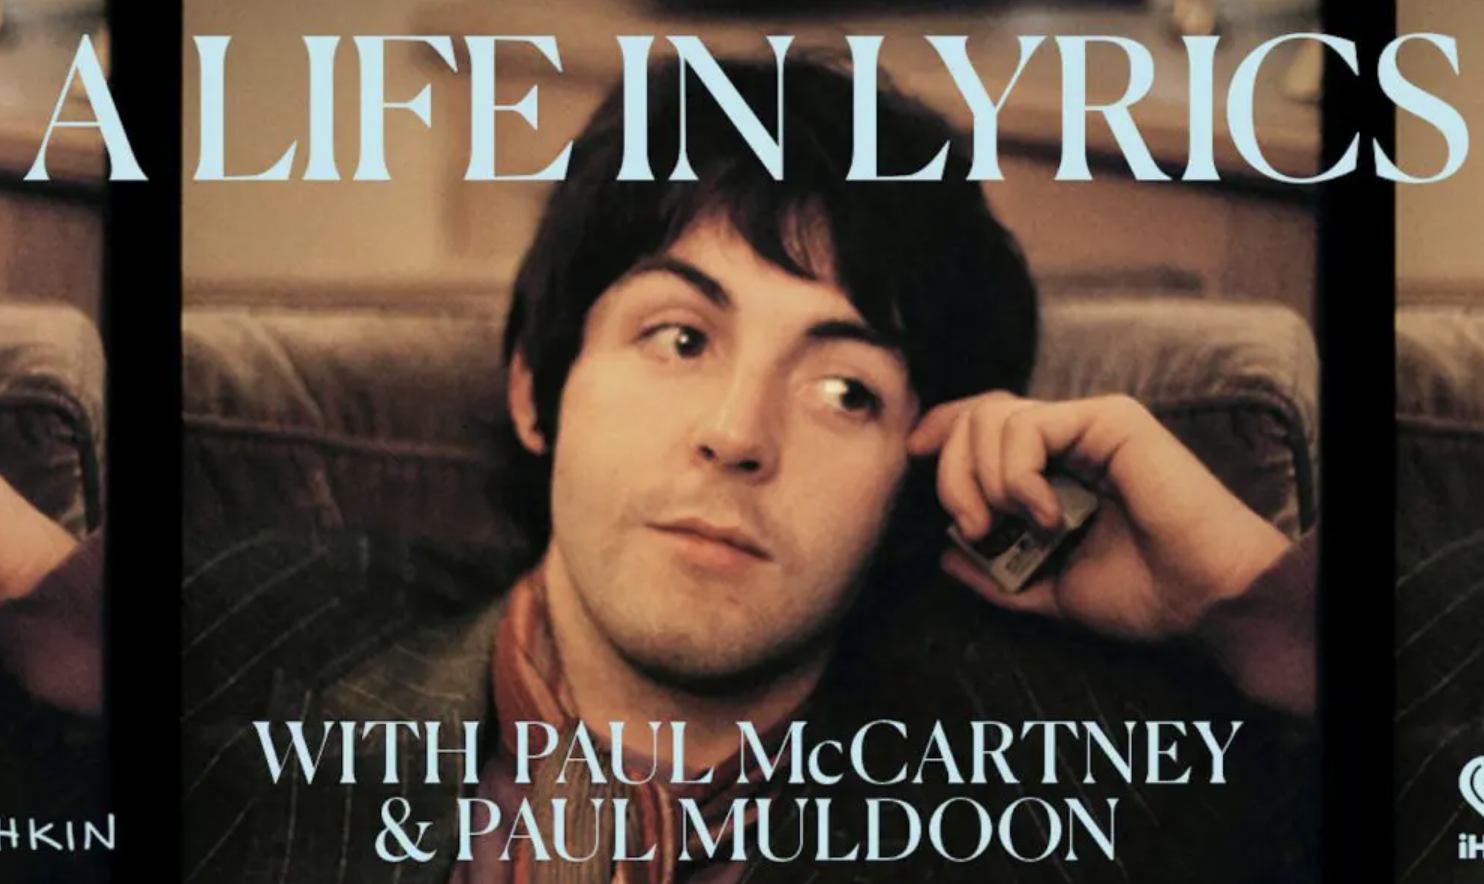 “A life in lyrics” el podcast que Paul McCartney lanzará en septiembre